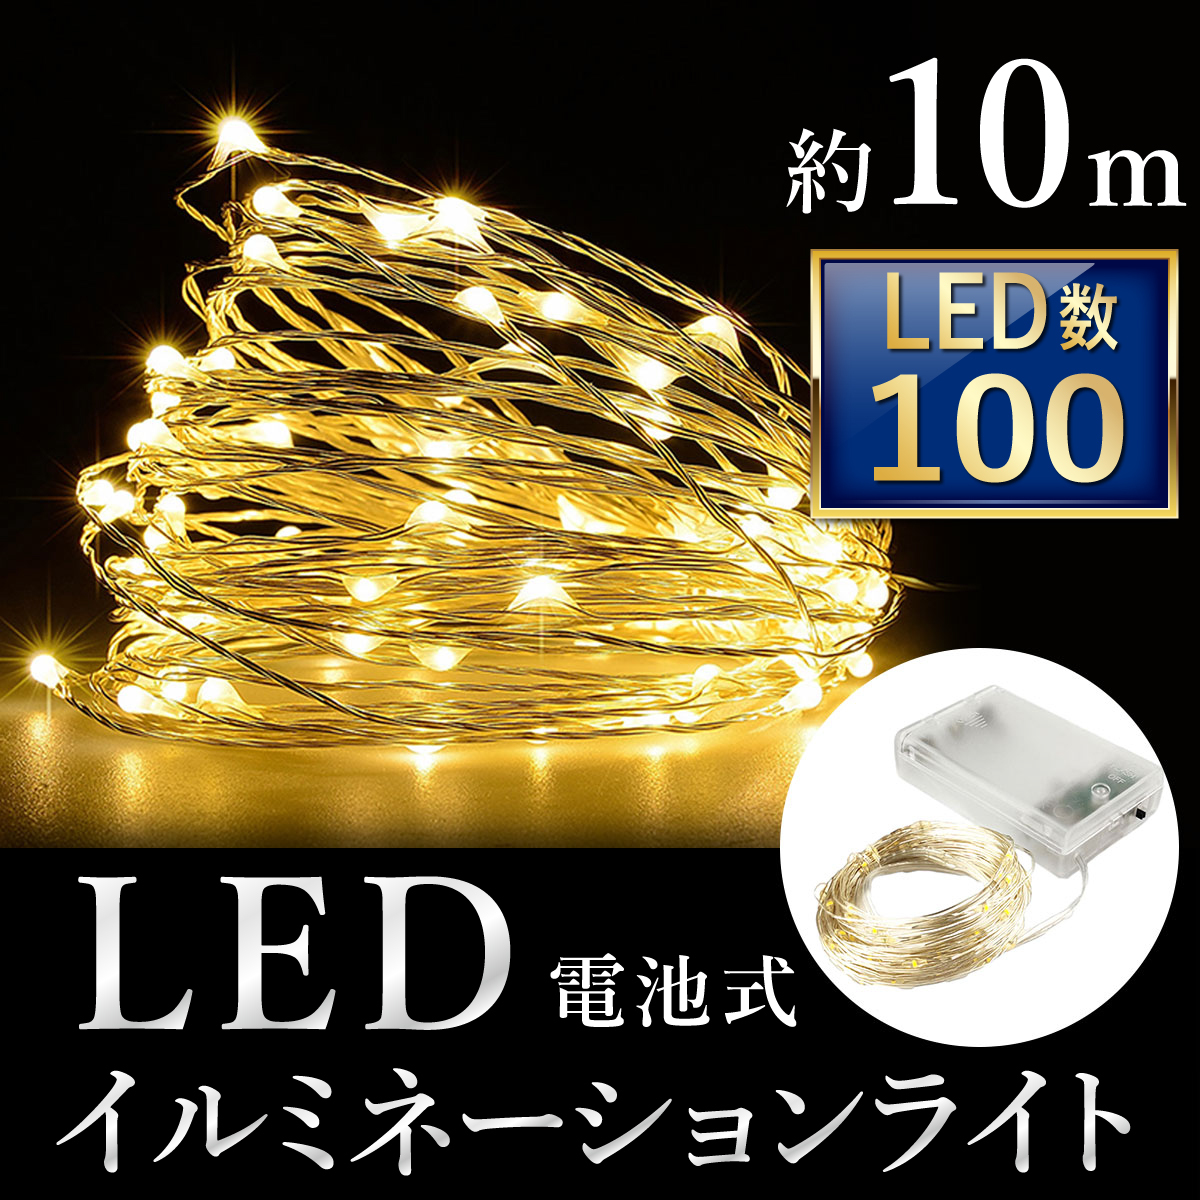 イルミネーションライト 10m 100球 電池式 ポイント消化 ジュエリーライト インテリアライト クリスマスツリー 送料無料